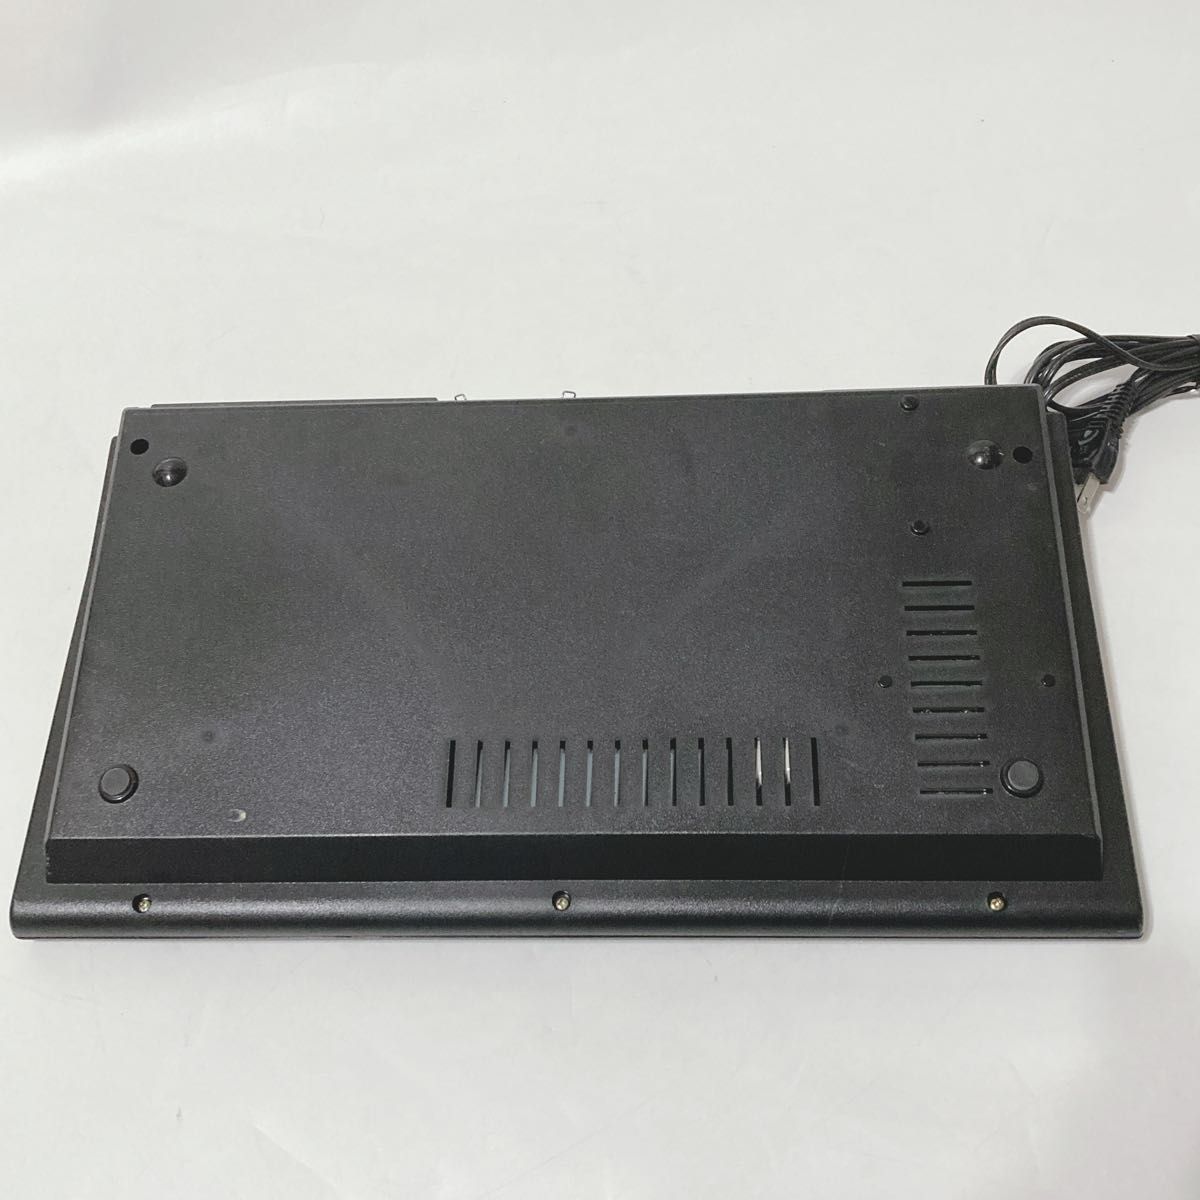 【ゲーム起動OK】SANYO MSX PHC-SPC サンヨー  キーボード